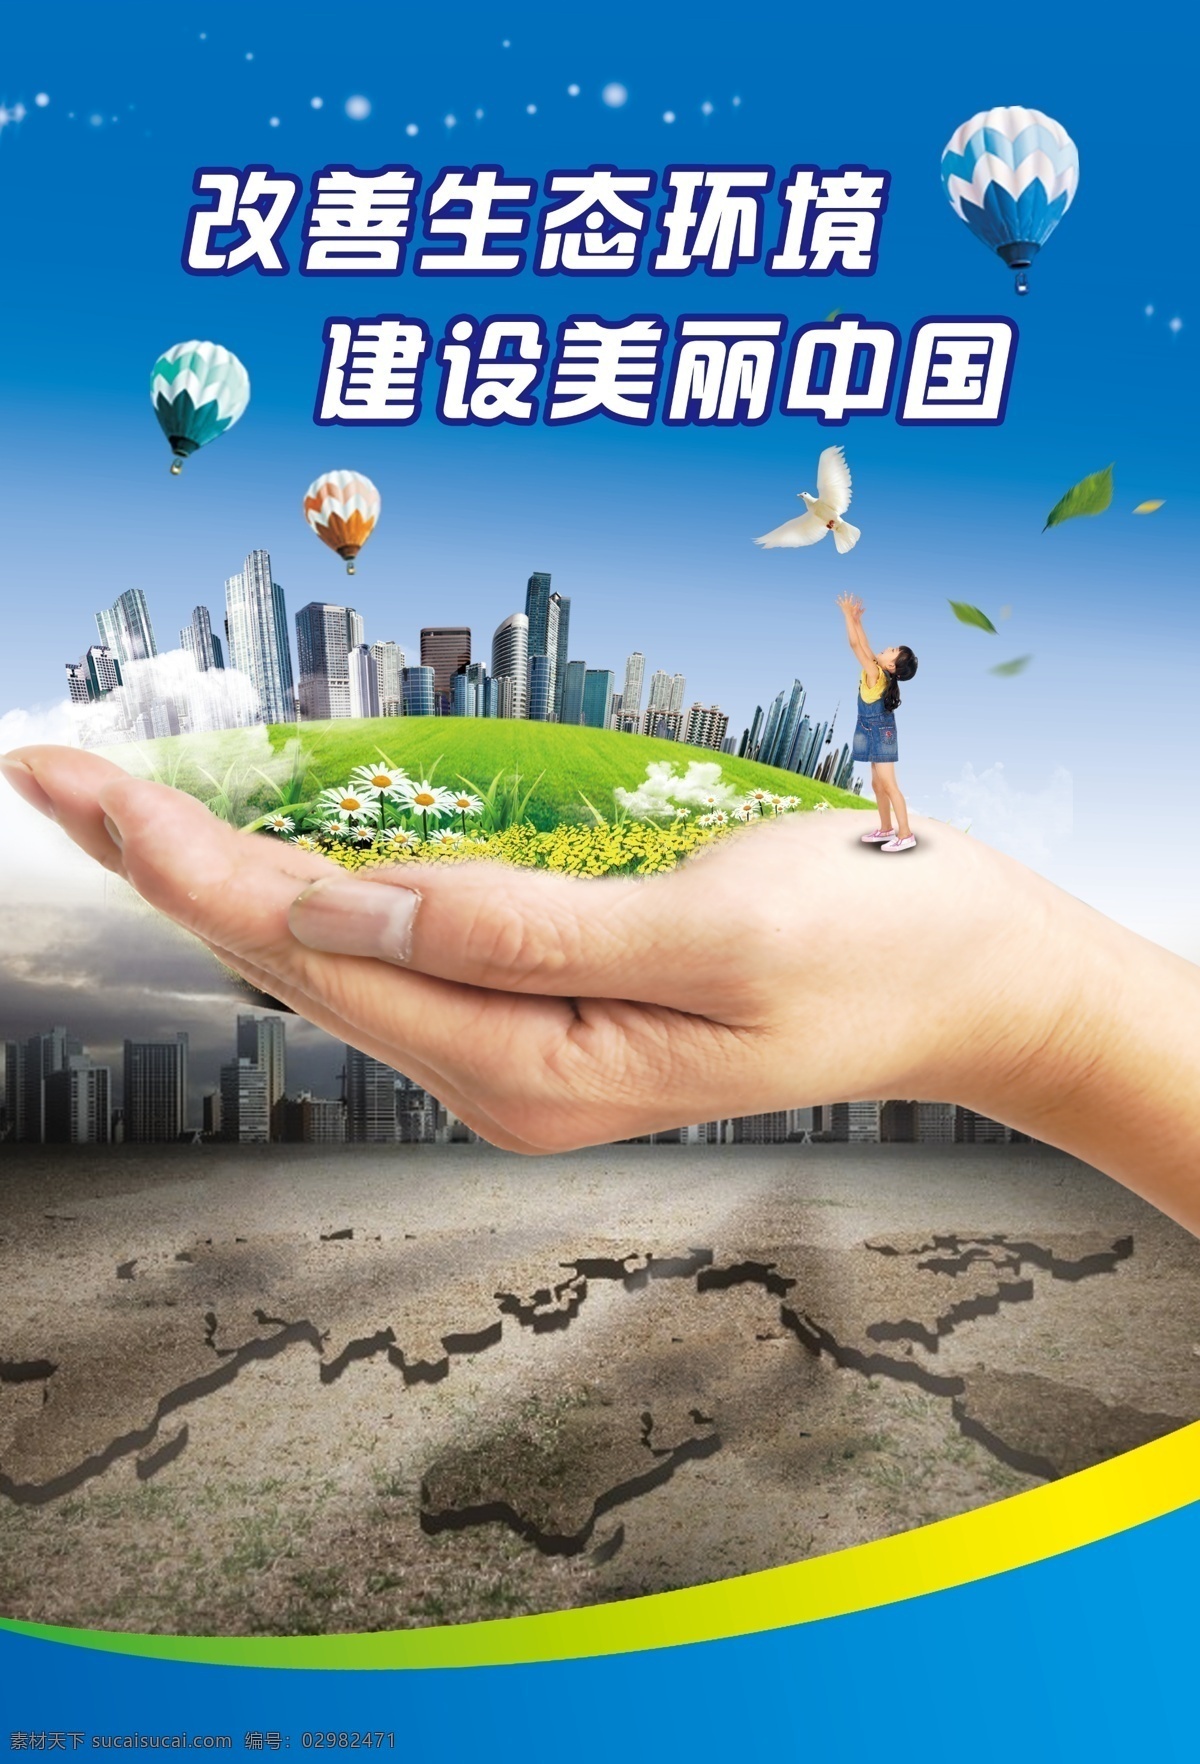 改善生态环境 建设美丽中国 改善改善 生态环境 建设 美丽中国 蓝色